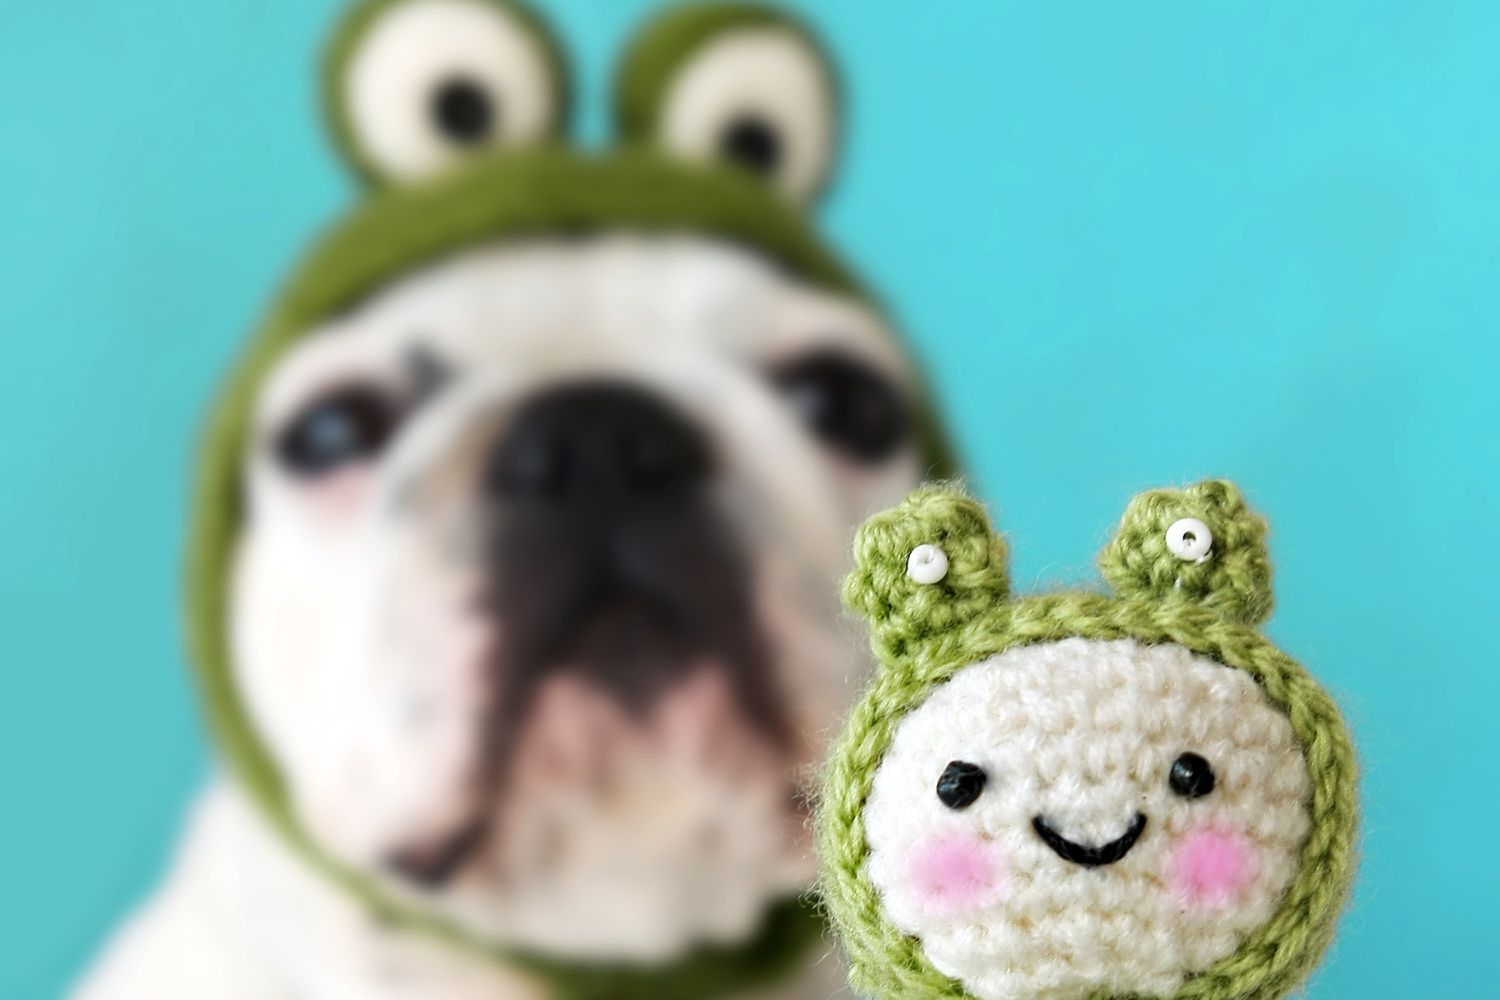 钩编和创造力将一个可爱的狗变成一个可爱的青蛙